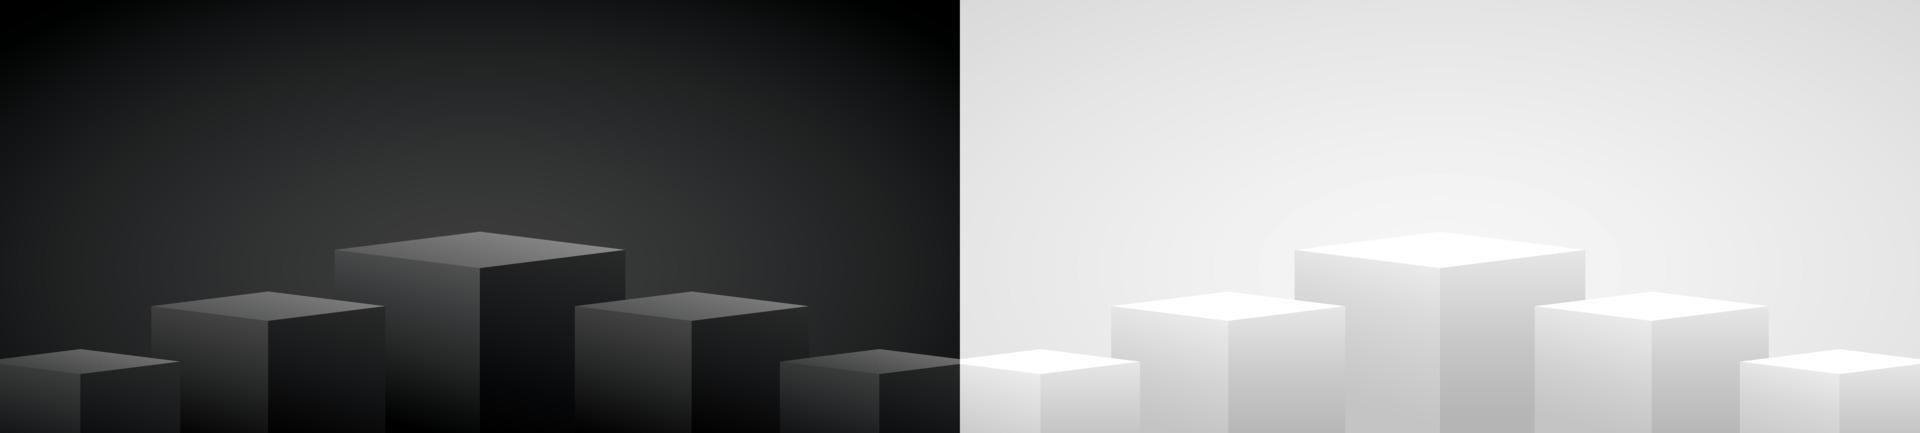 cool minimal design svart och vit geometrisk podium visa bakgrund 3d illustration vektor